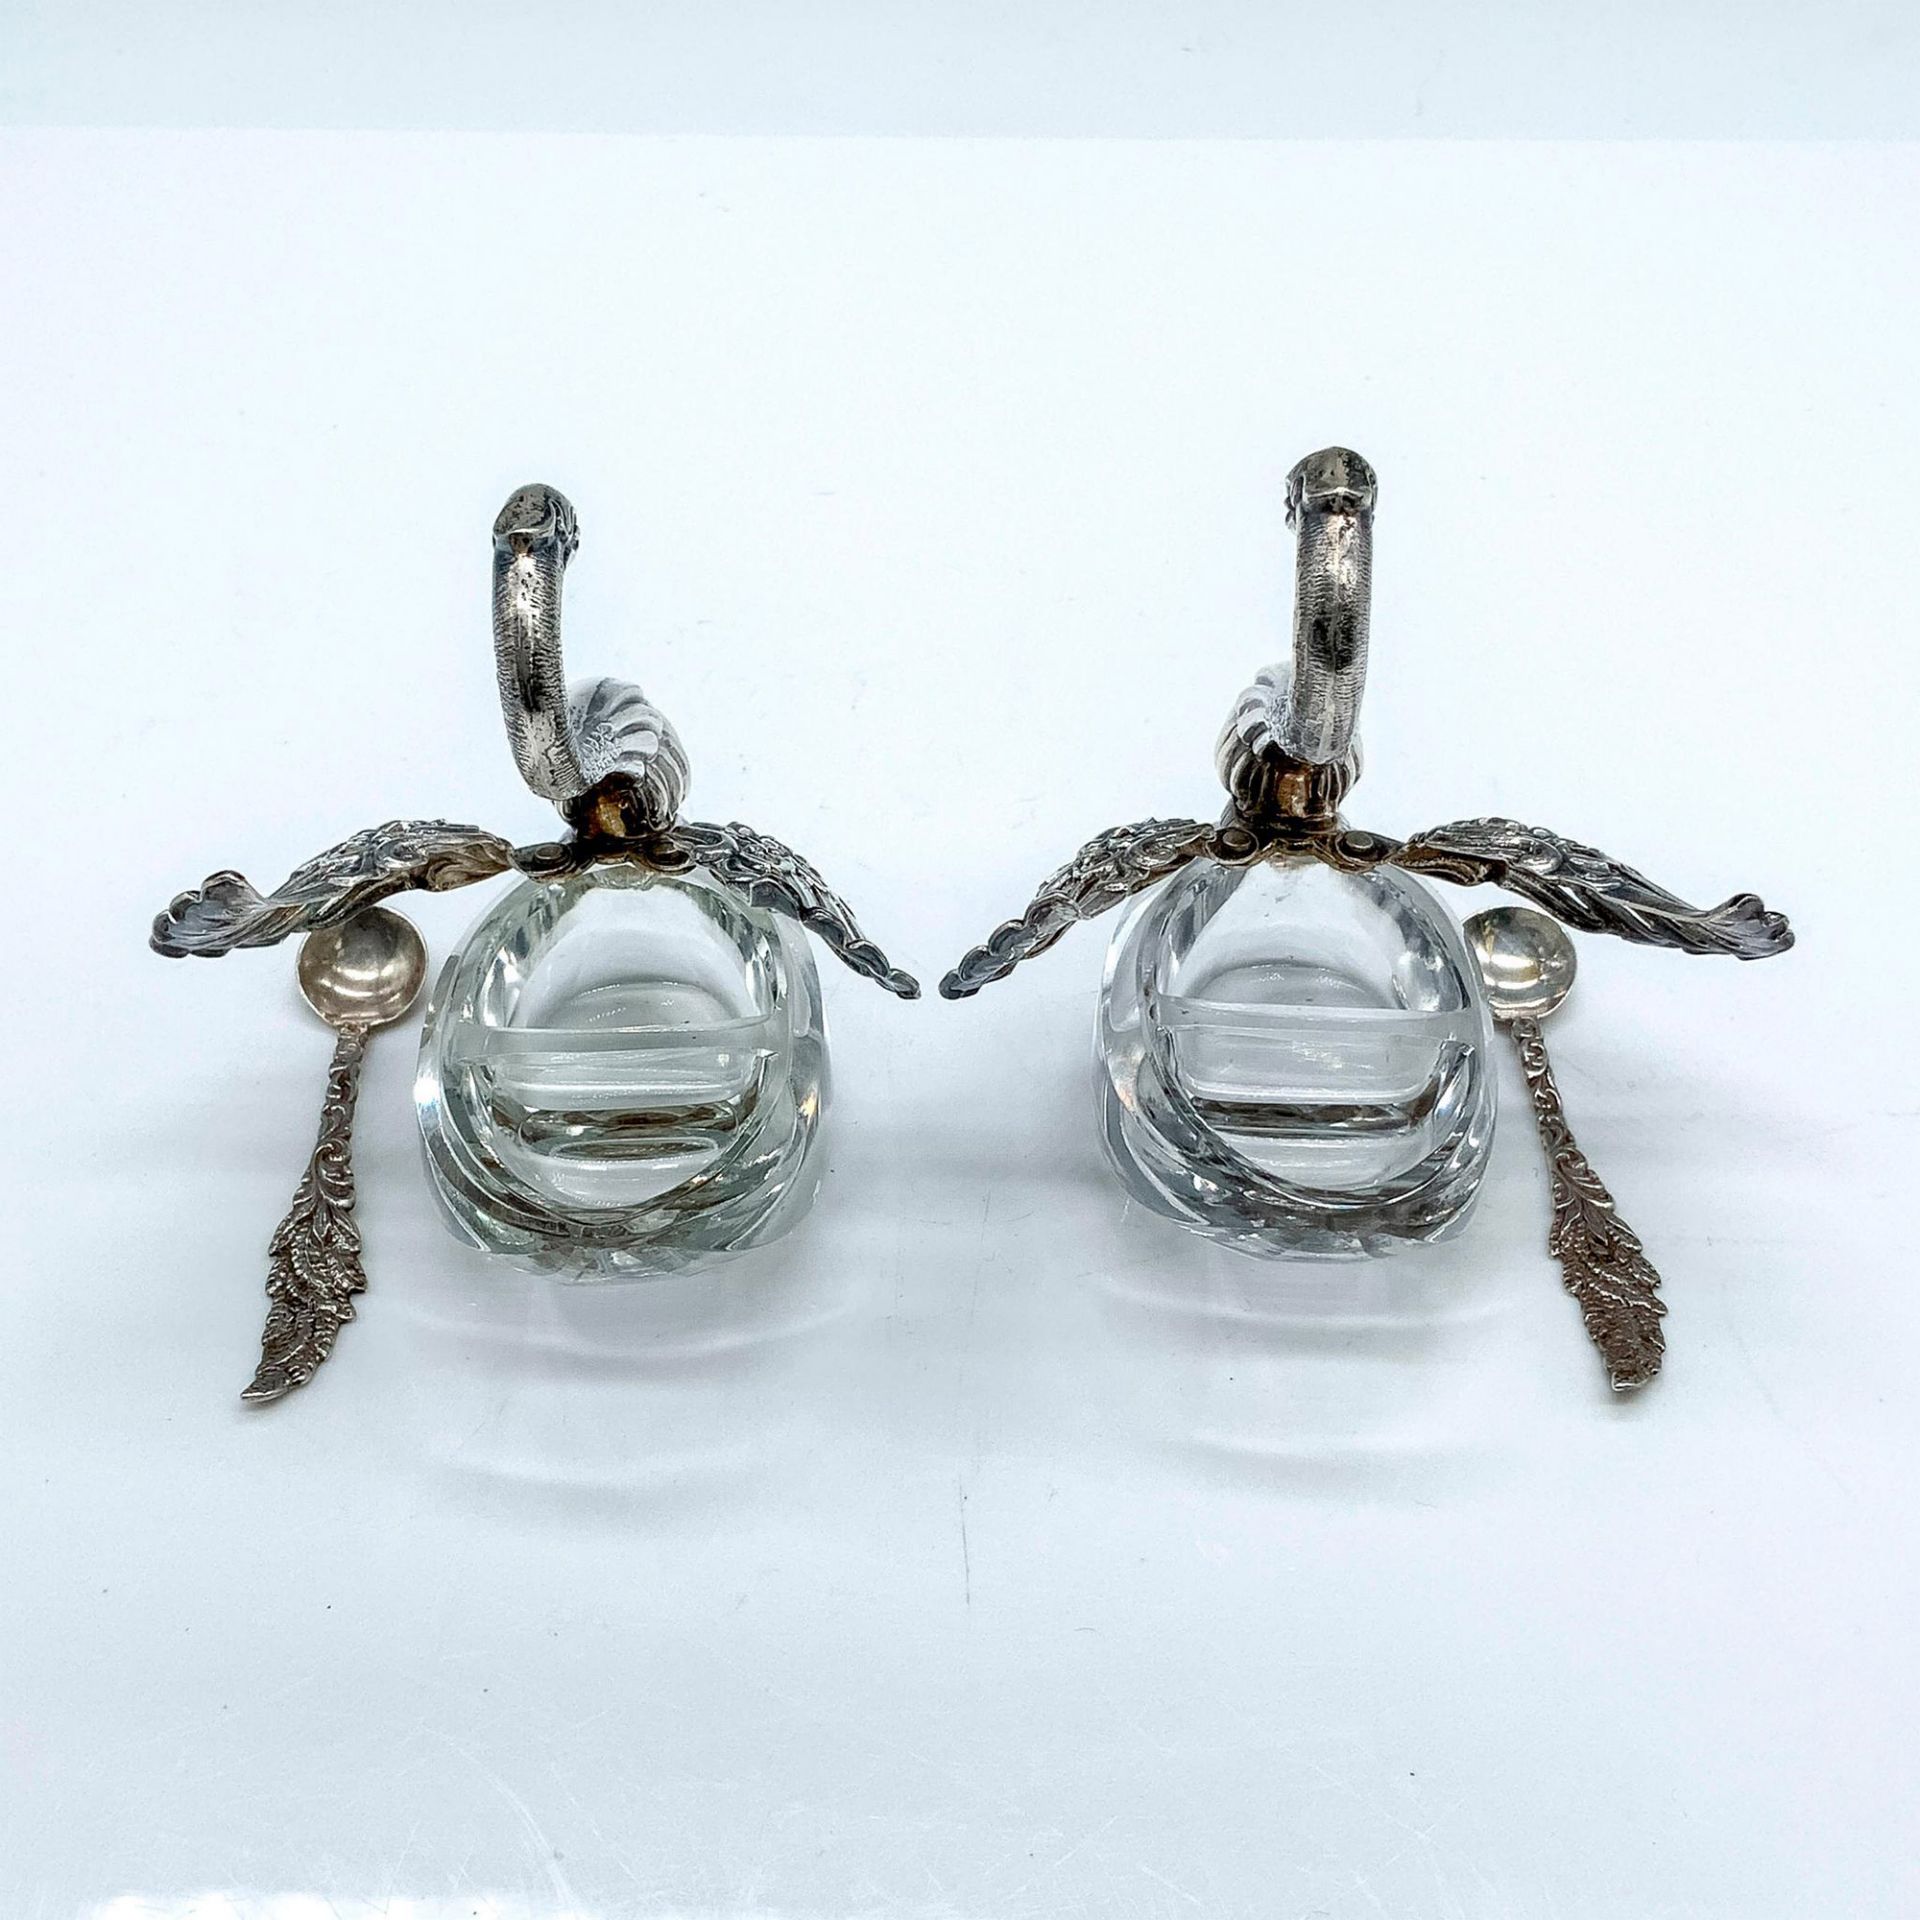 Pair of German Sterling Silver Swan Salt Cellars and Spoons - Image 2 of 2